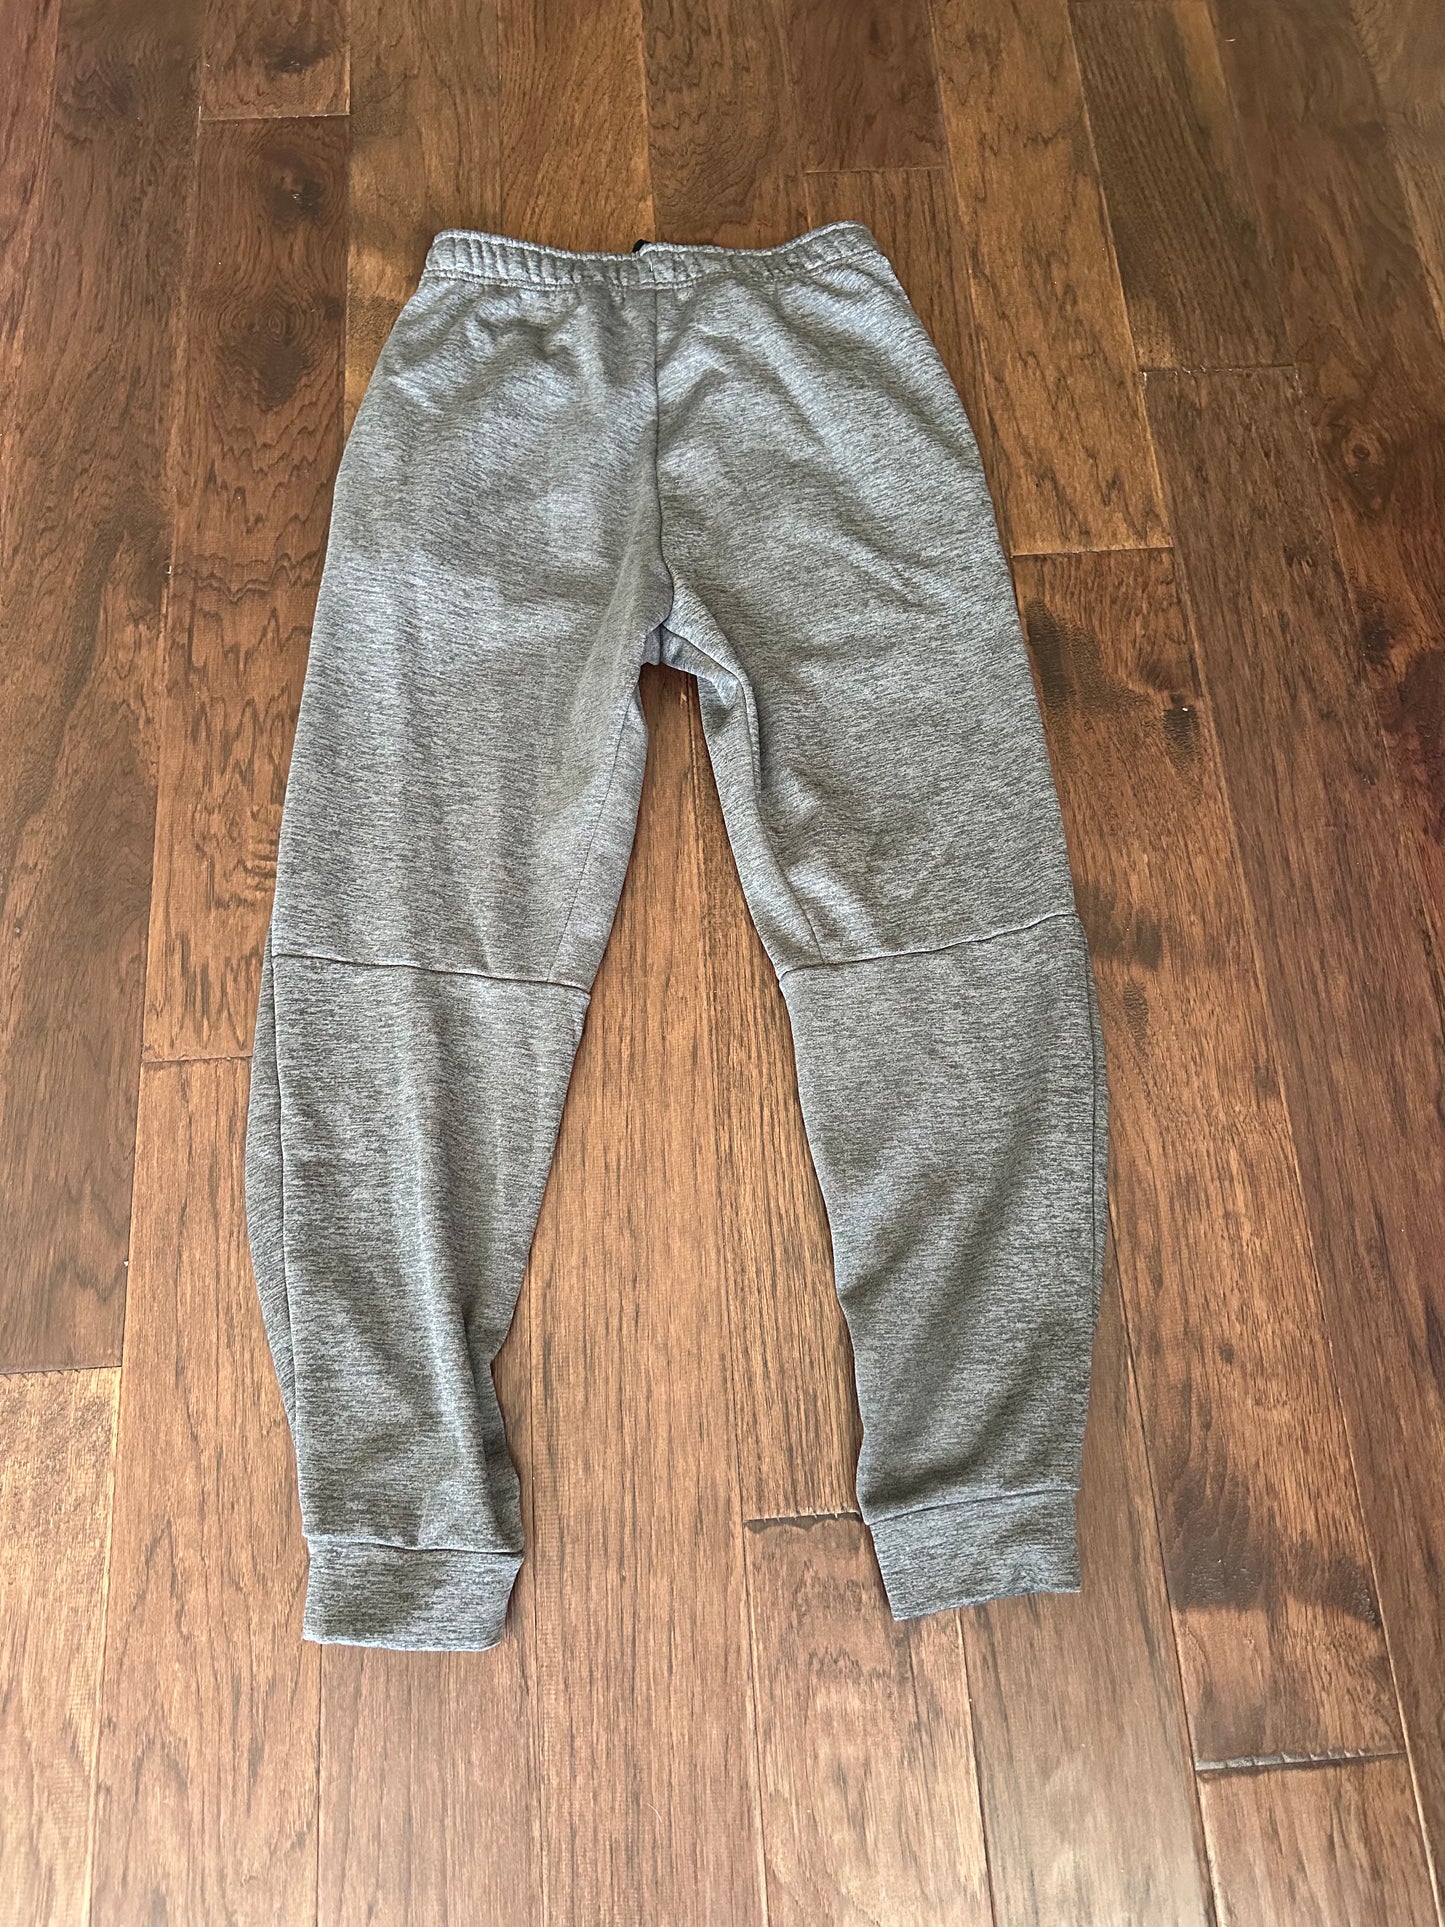 Nike - Grey Sweat pants - Medium